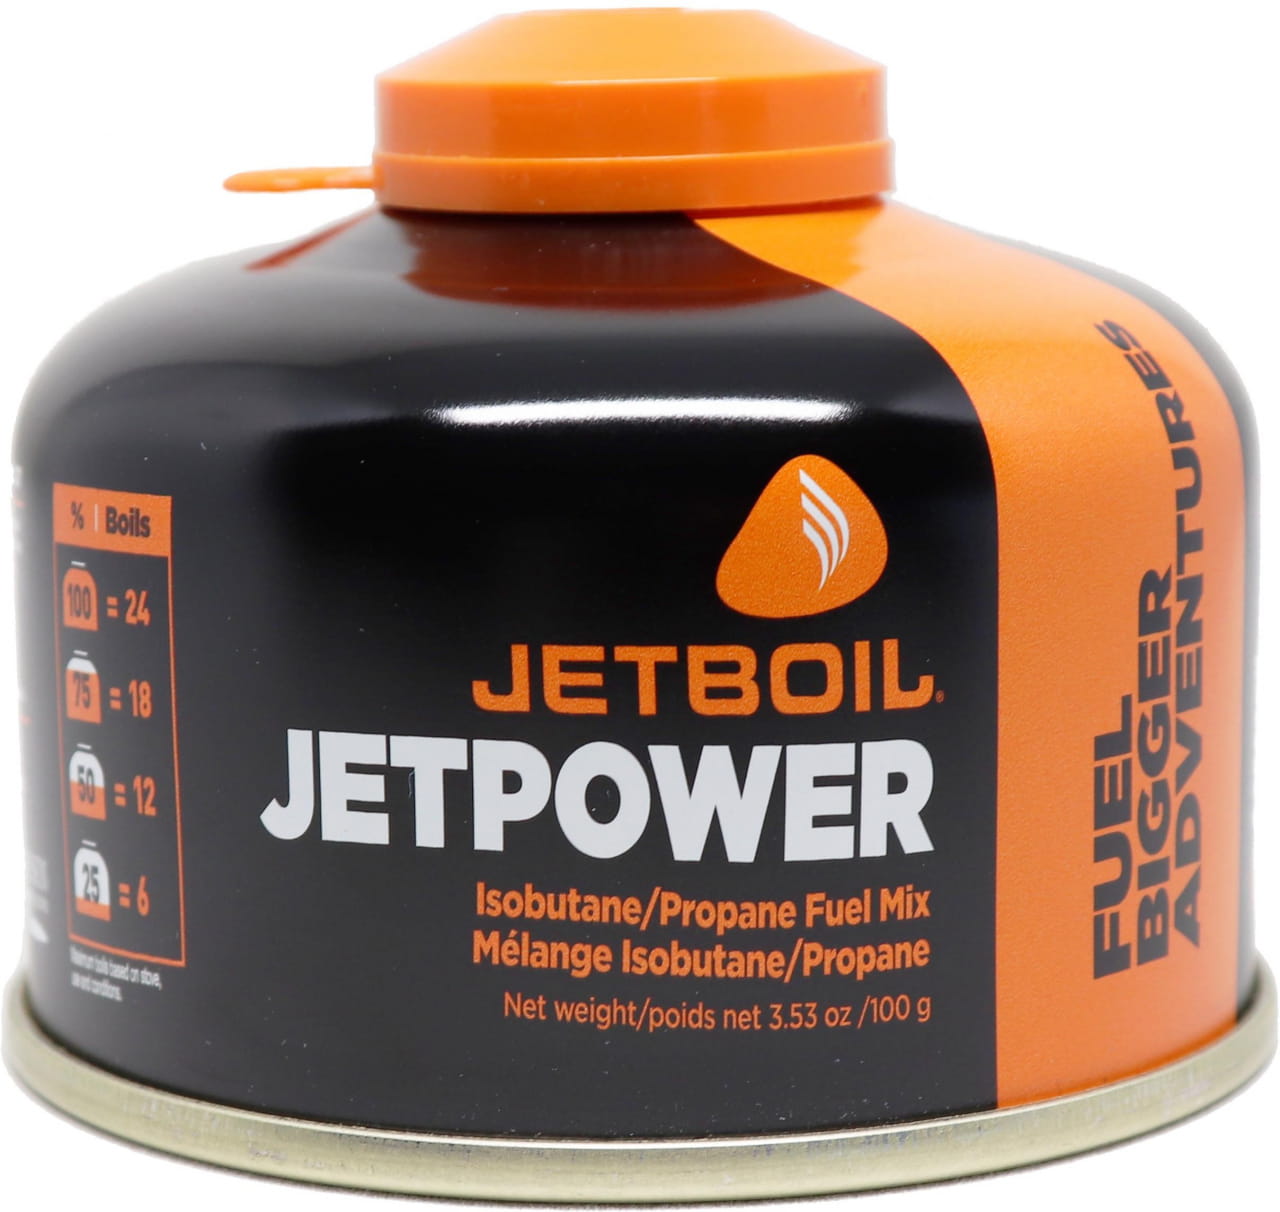 Wkłady Jetboil Jetpower Fuel - 100g